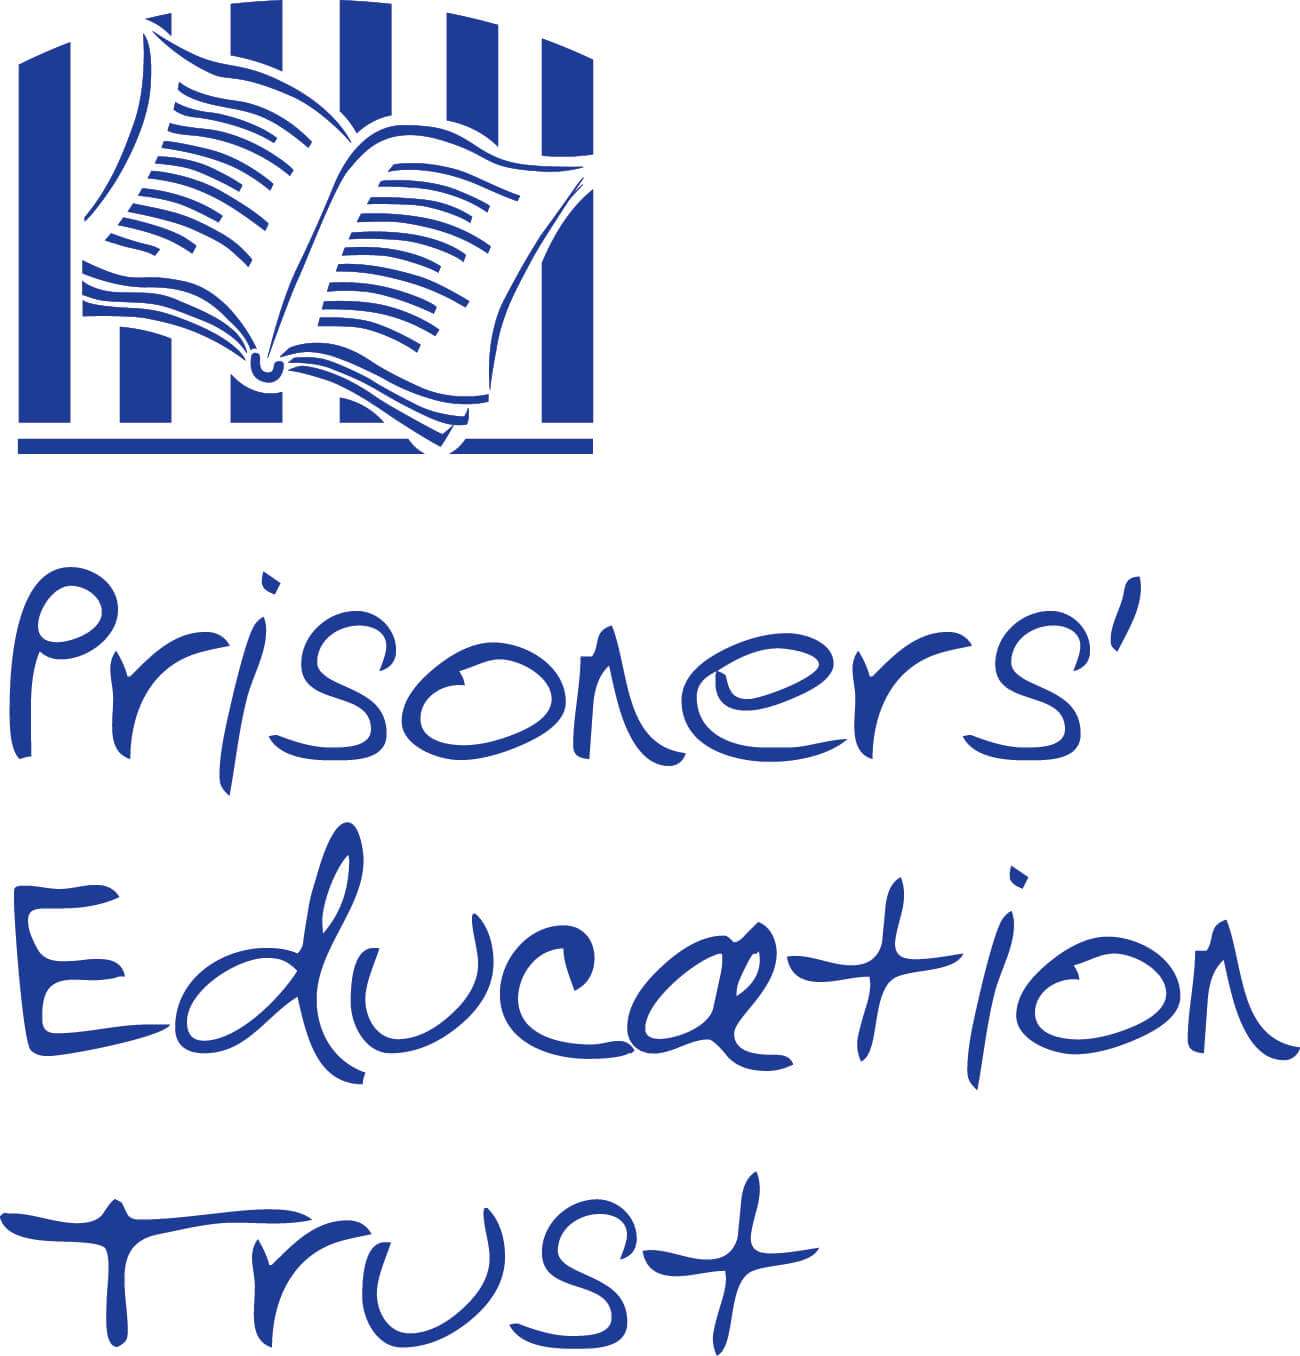 prisolers education trust